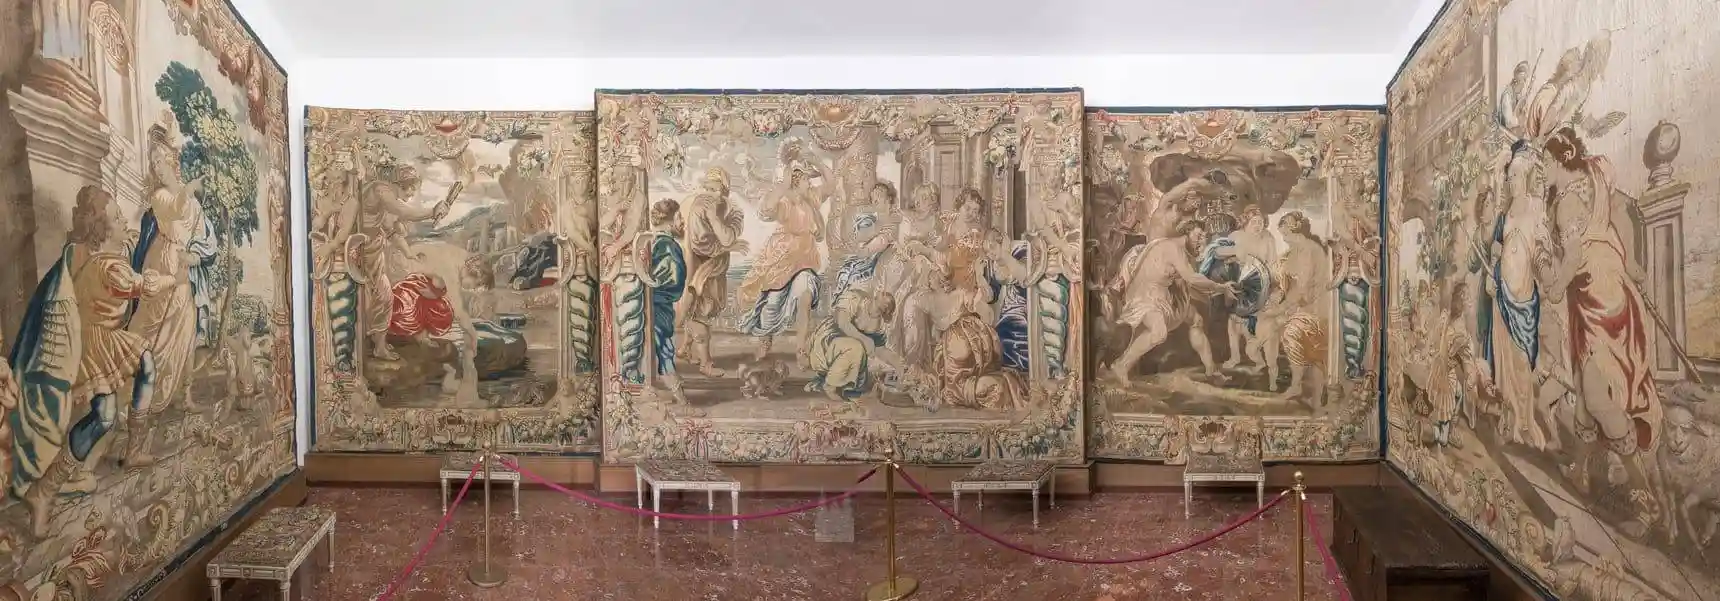 Vista general de la sala dedicada a los tapices de taller de Bruselas sobre cartones de Rubens